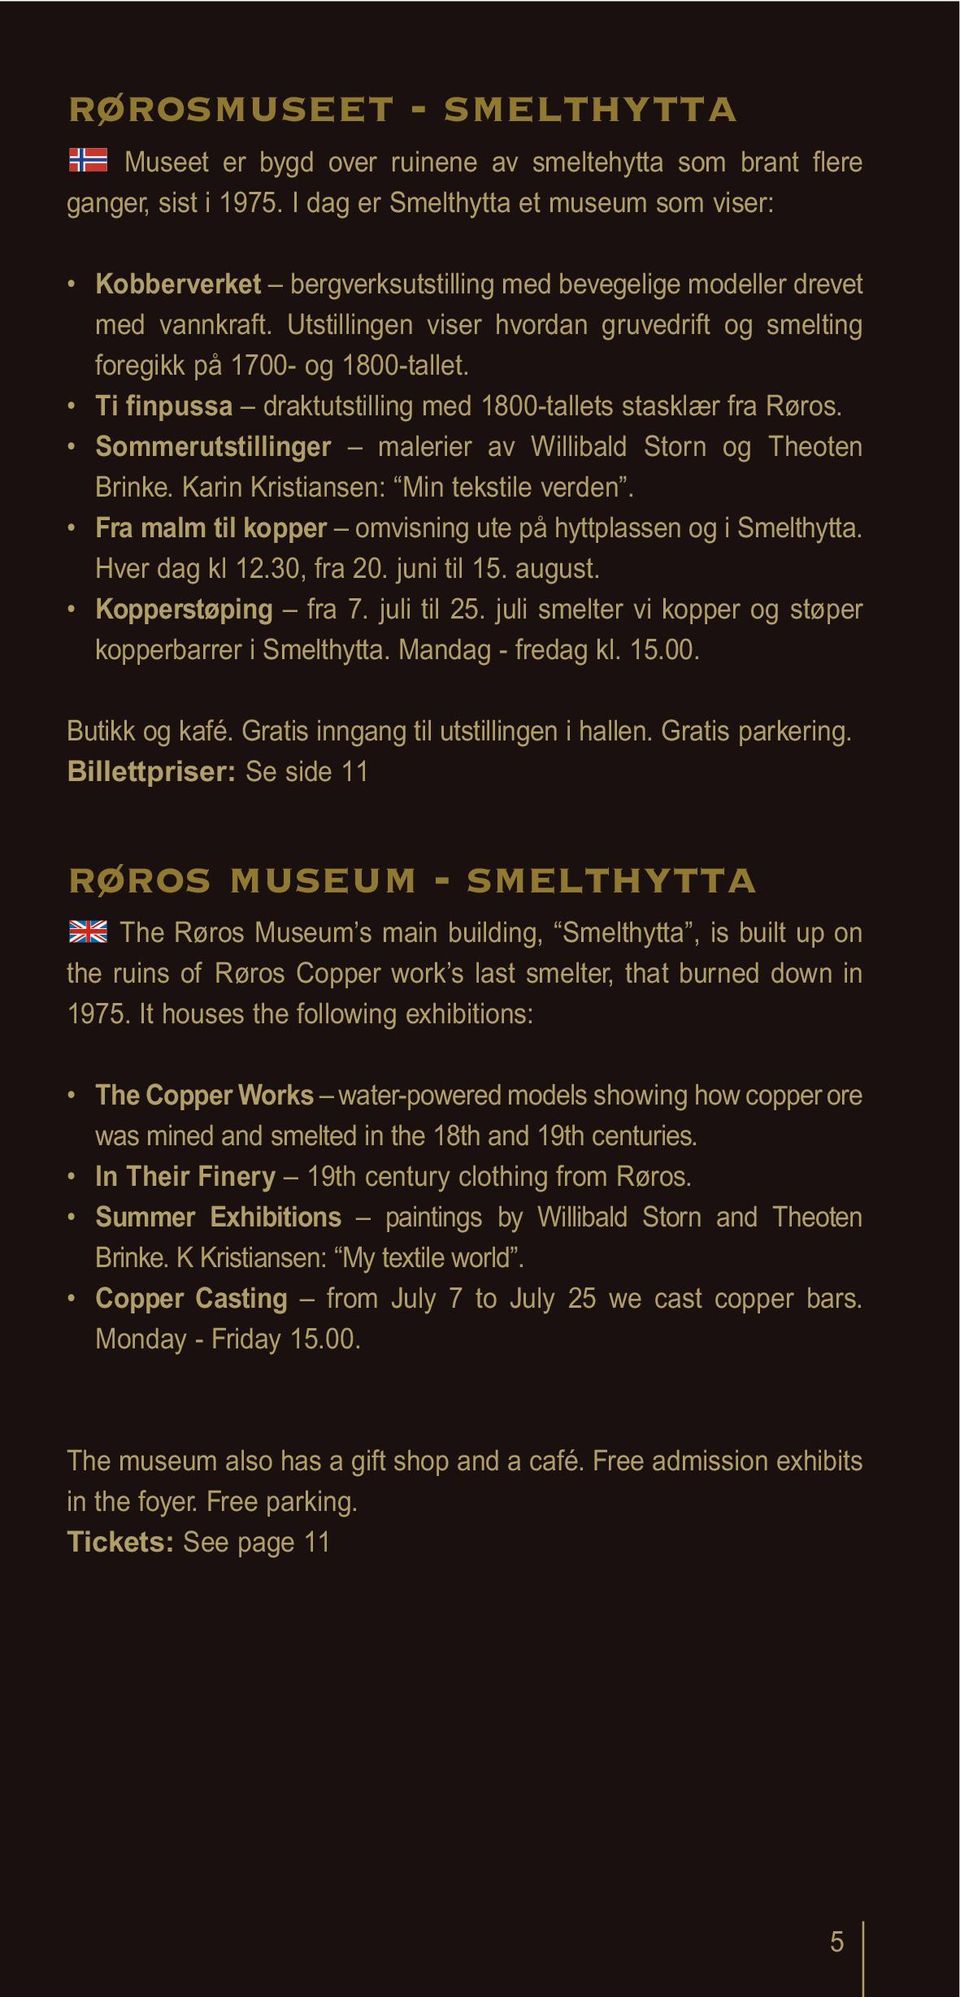 Utstillingen viser hvordan gruvedrift og smelting foregikk på 1700- og 1800-tallet. Ti finpussa draktutstilling med 1800-tallets stasklær fra Røros.